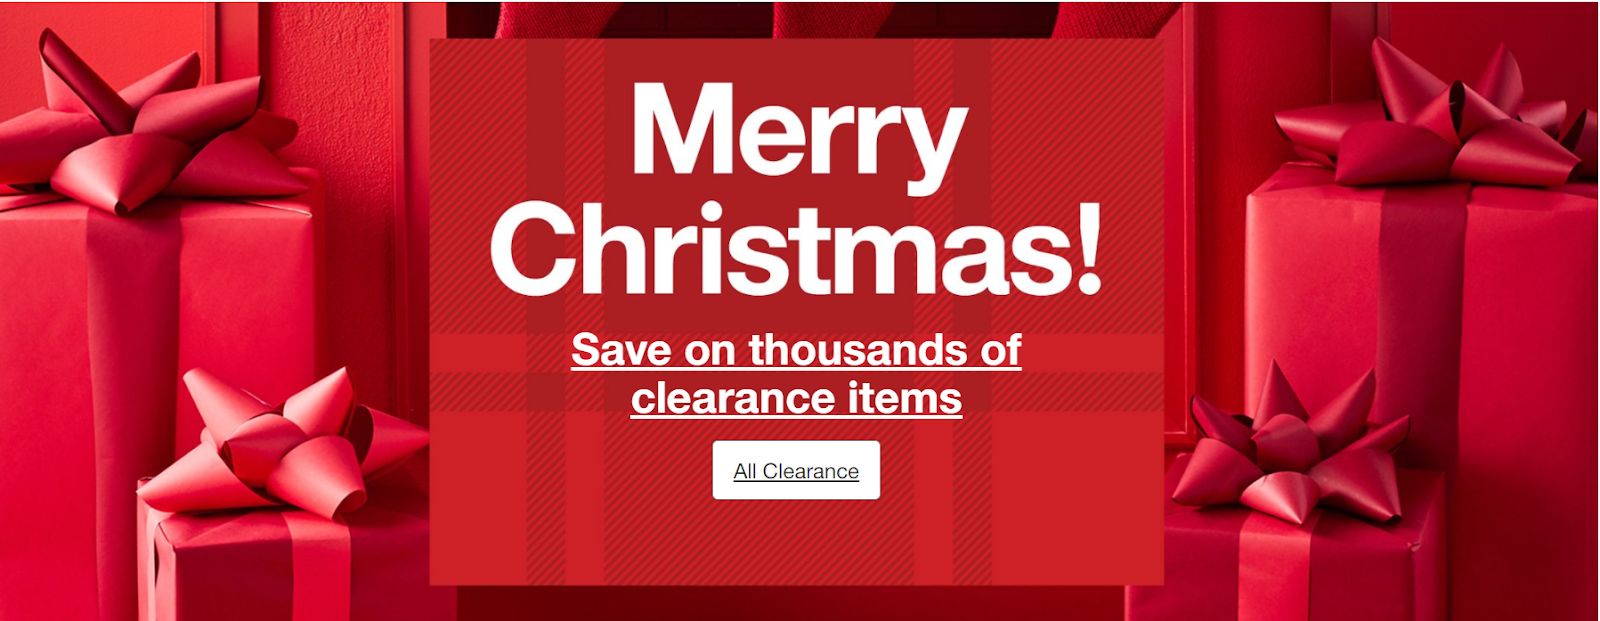 After Christmas sale banner o Target website